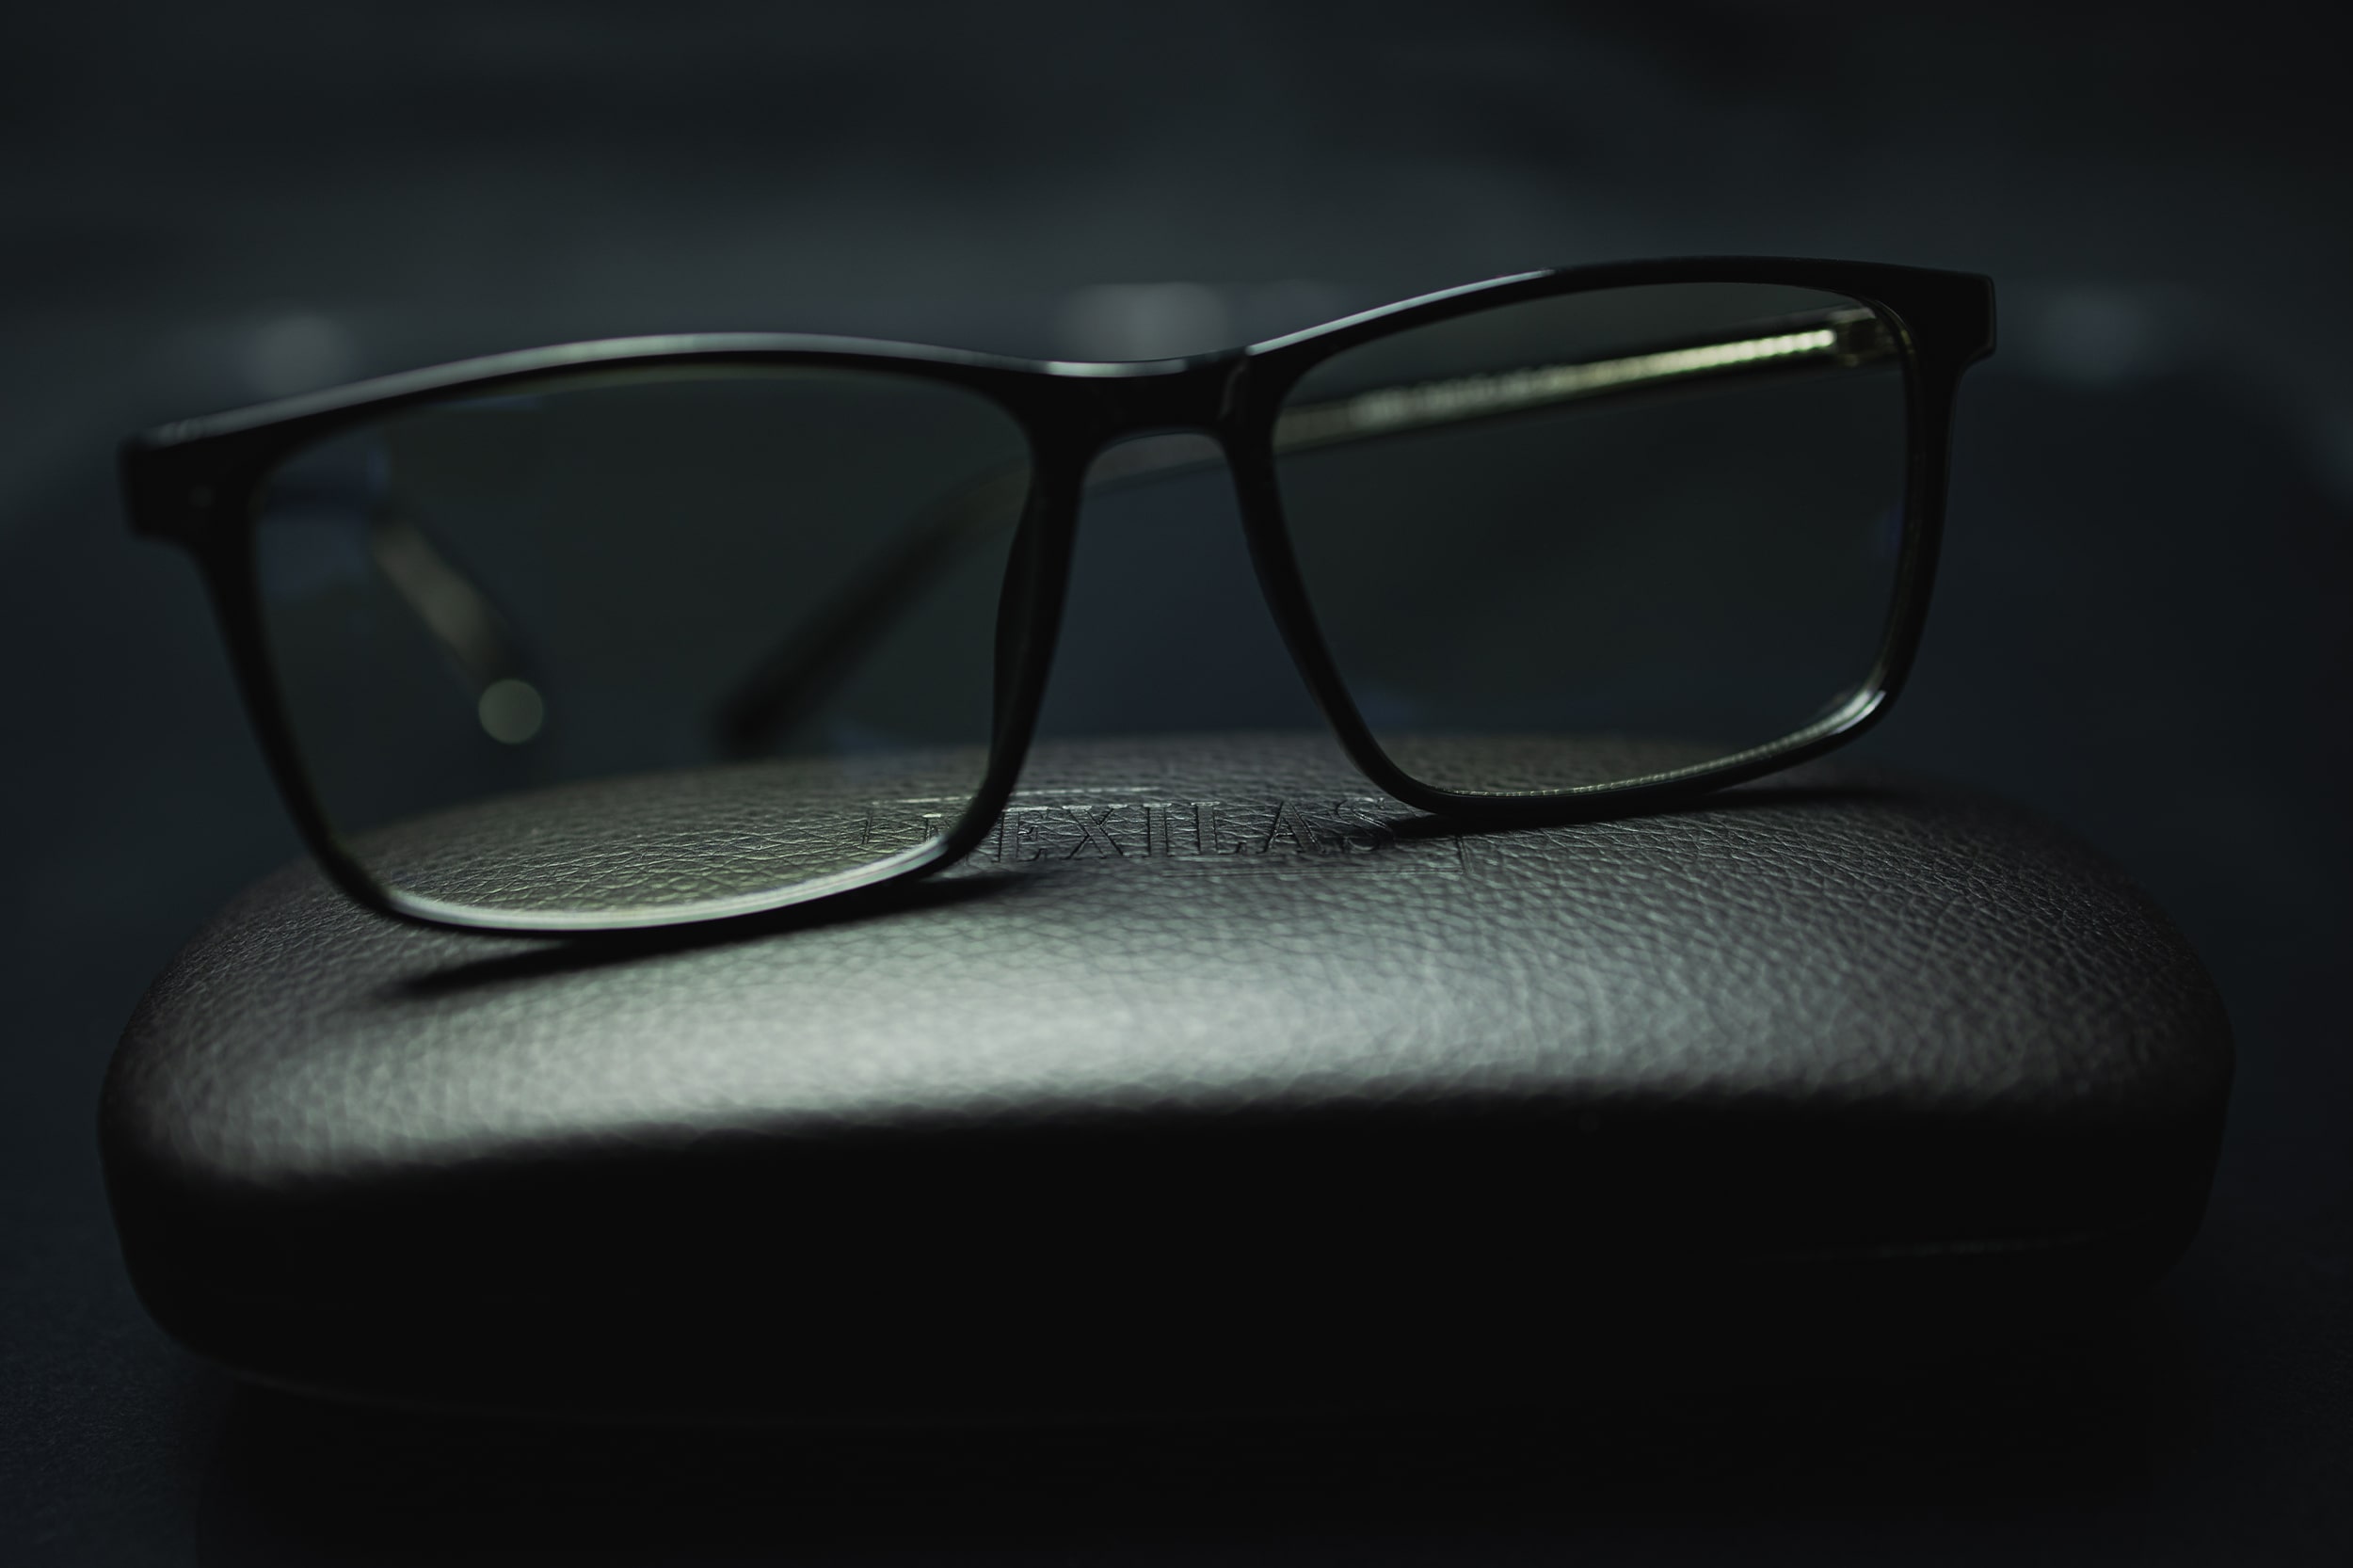 Lunettes anti-lumière bleue protection optimale filtre de protection écran anti fatigue lunette de repos